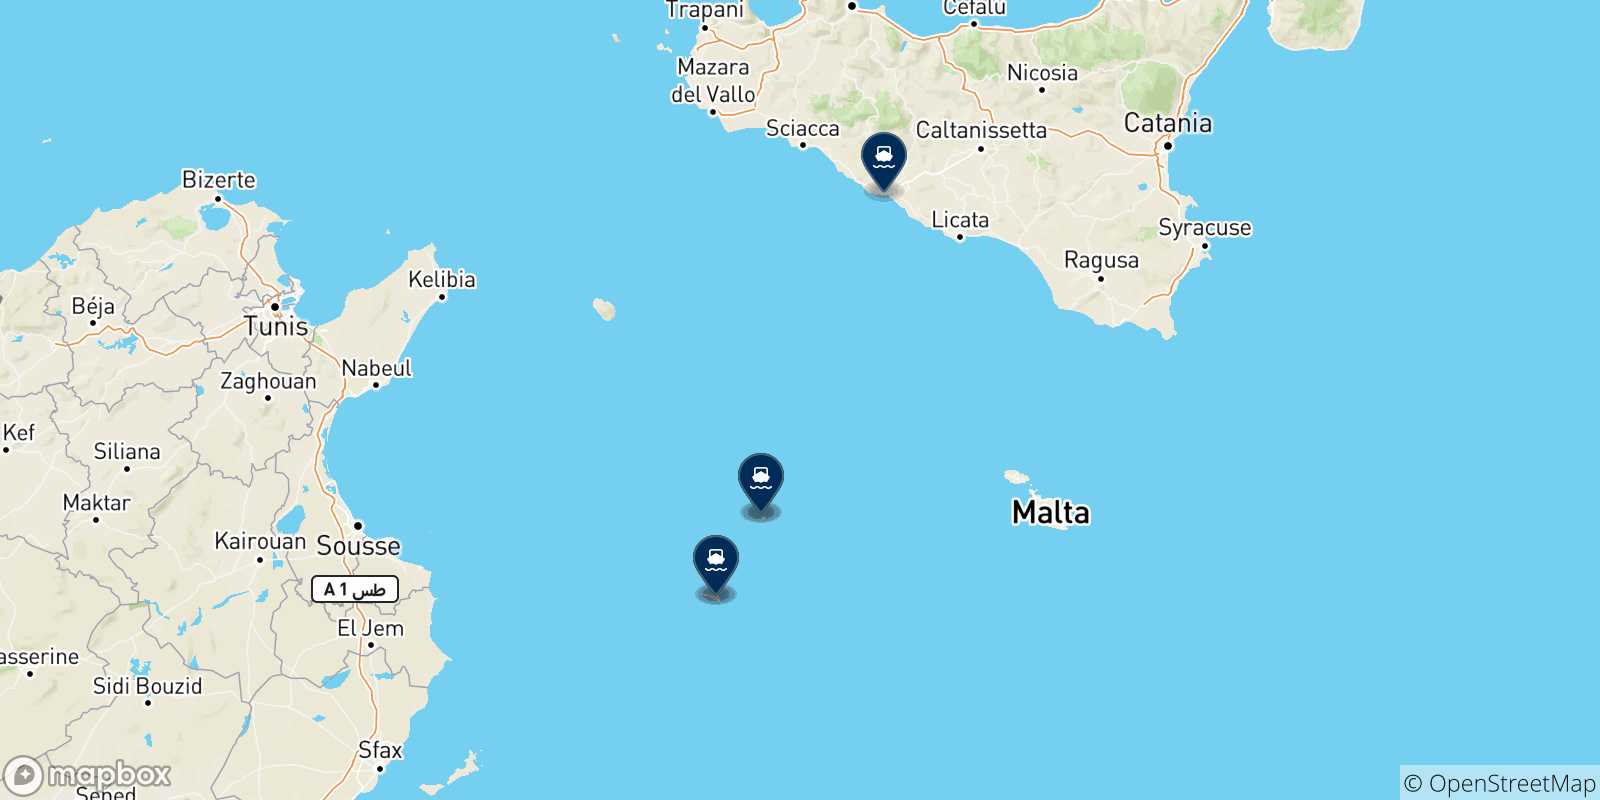 Mappa delle destinazioni raggiungibili dalle Isole Pelagie